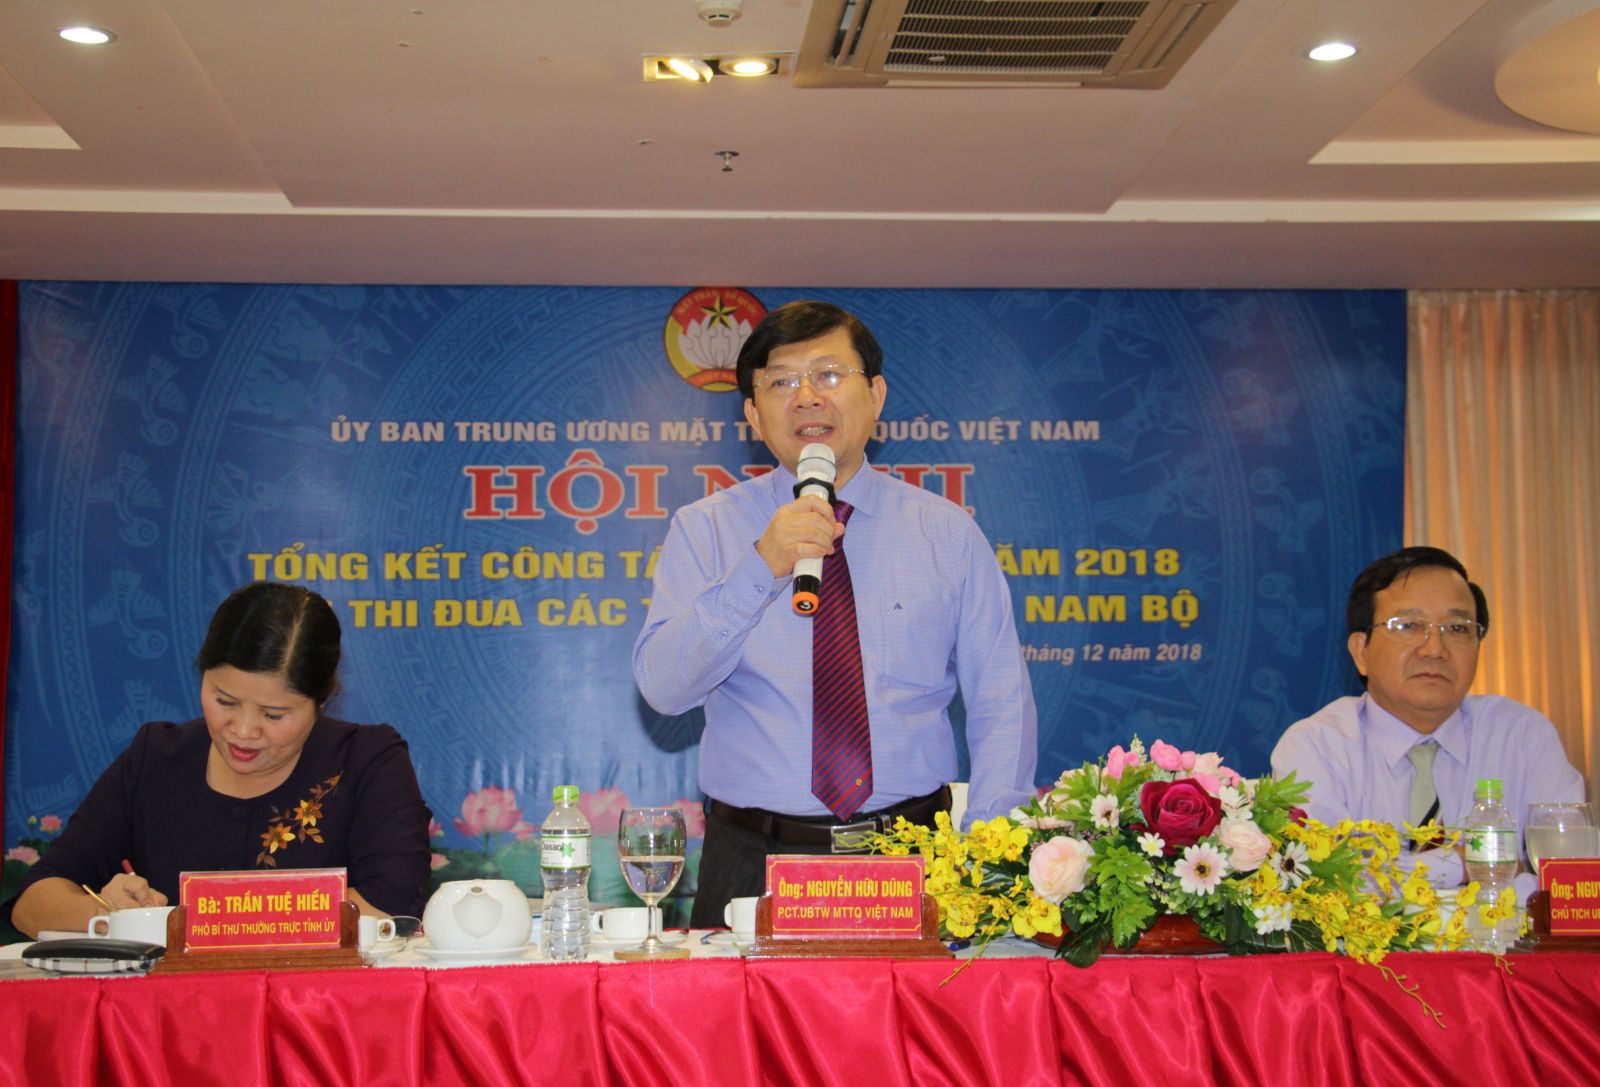 Điểm báo in Tây Ninh ngày 07.12.2018